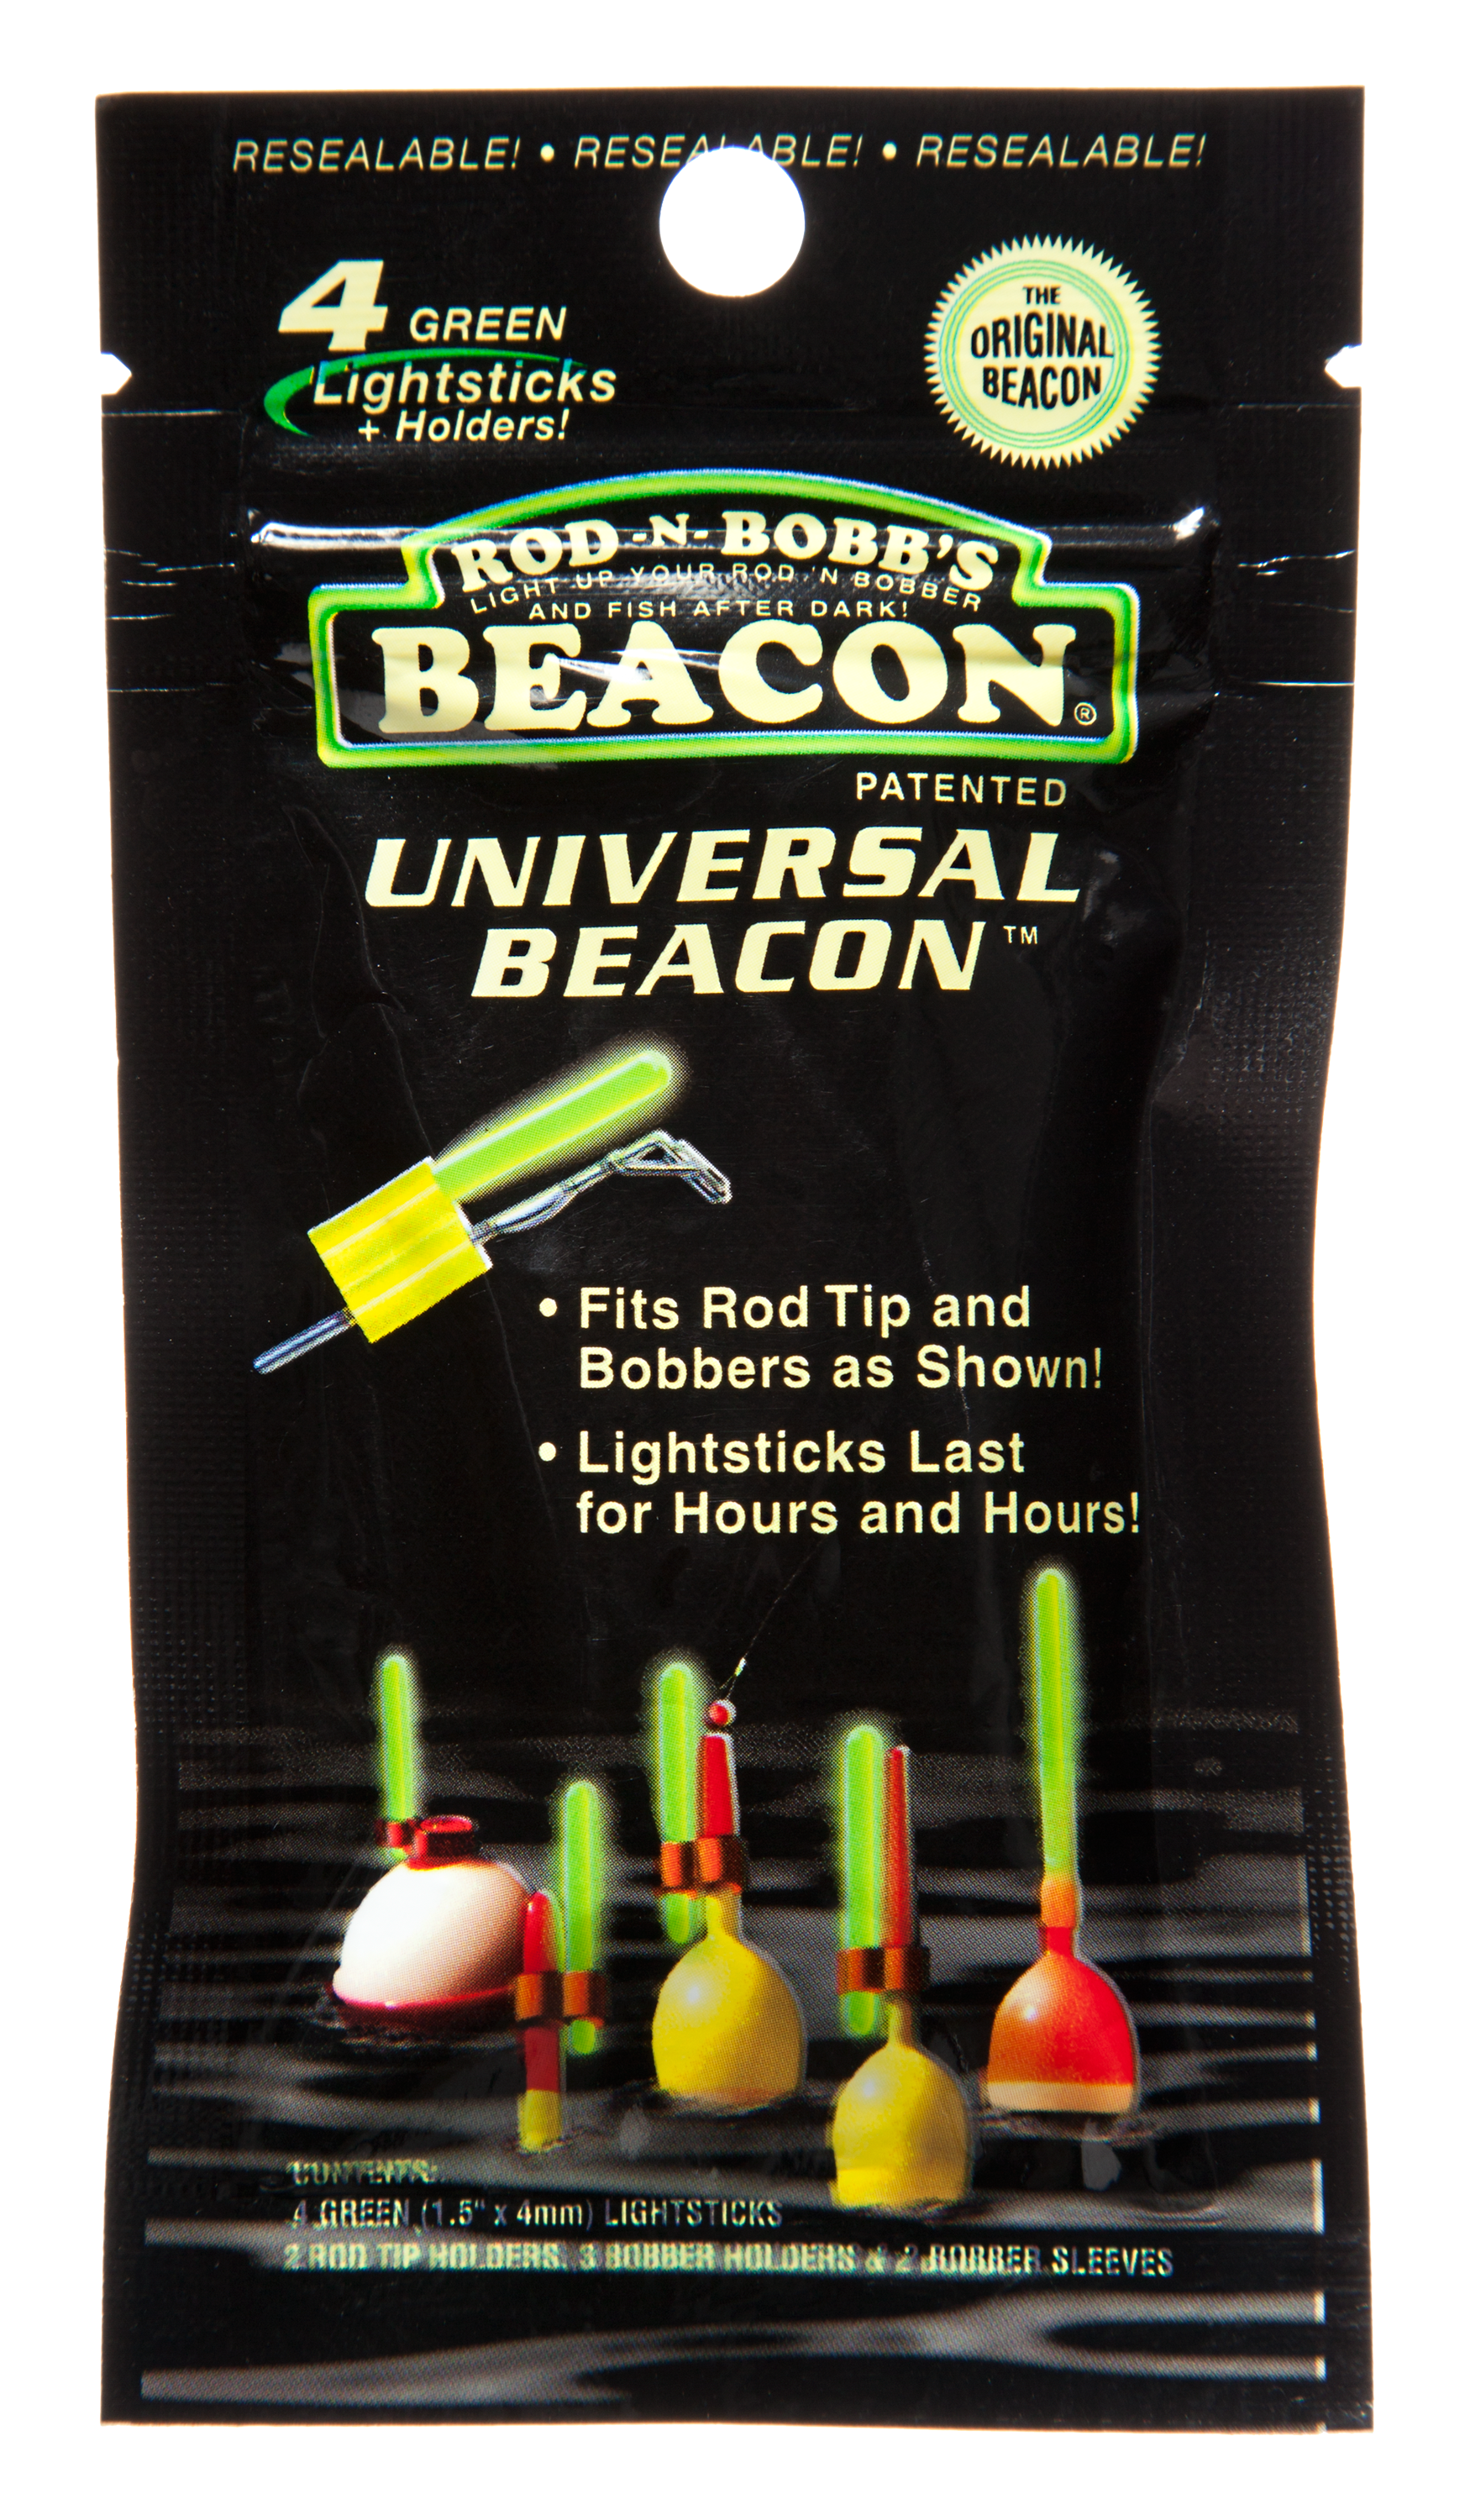 Universal Beacon Lightsticks by Rod-N-Bobb's